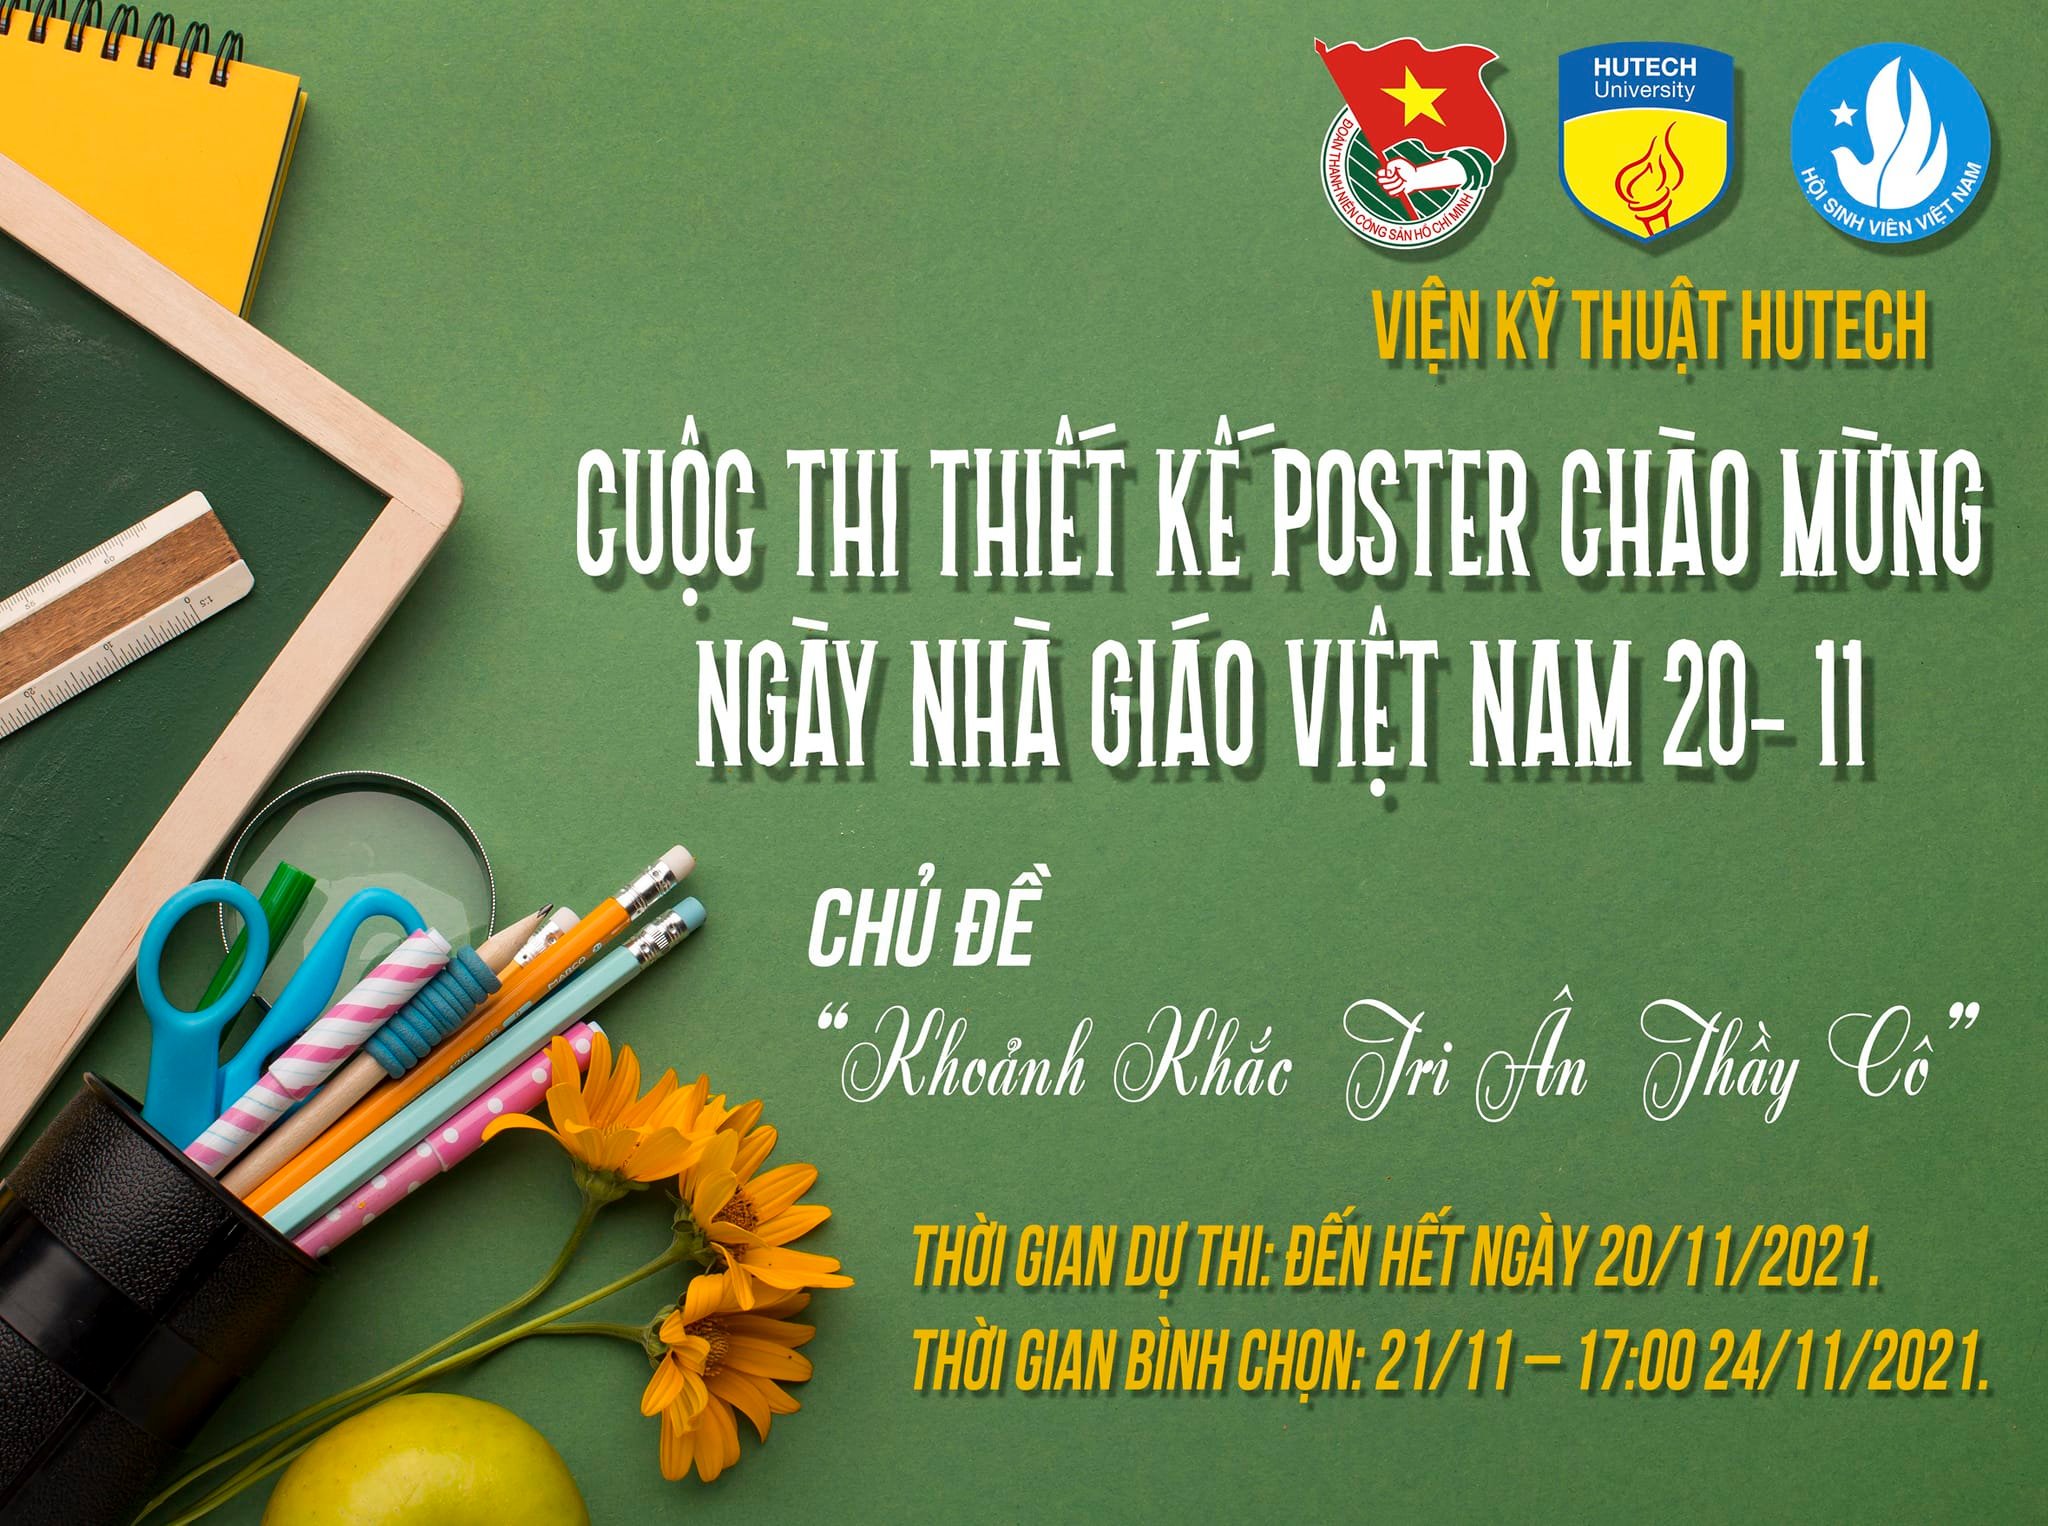 Cuộc Thi Thiết Kế Poster Chào Mừng Ngày Nhà Giáo Việt Nam 20-11 ”Khoảnh  Khắc Tri Ân Thầy Cô”